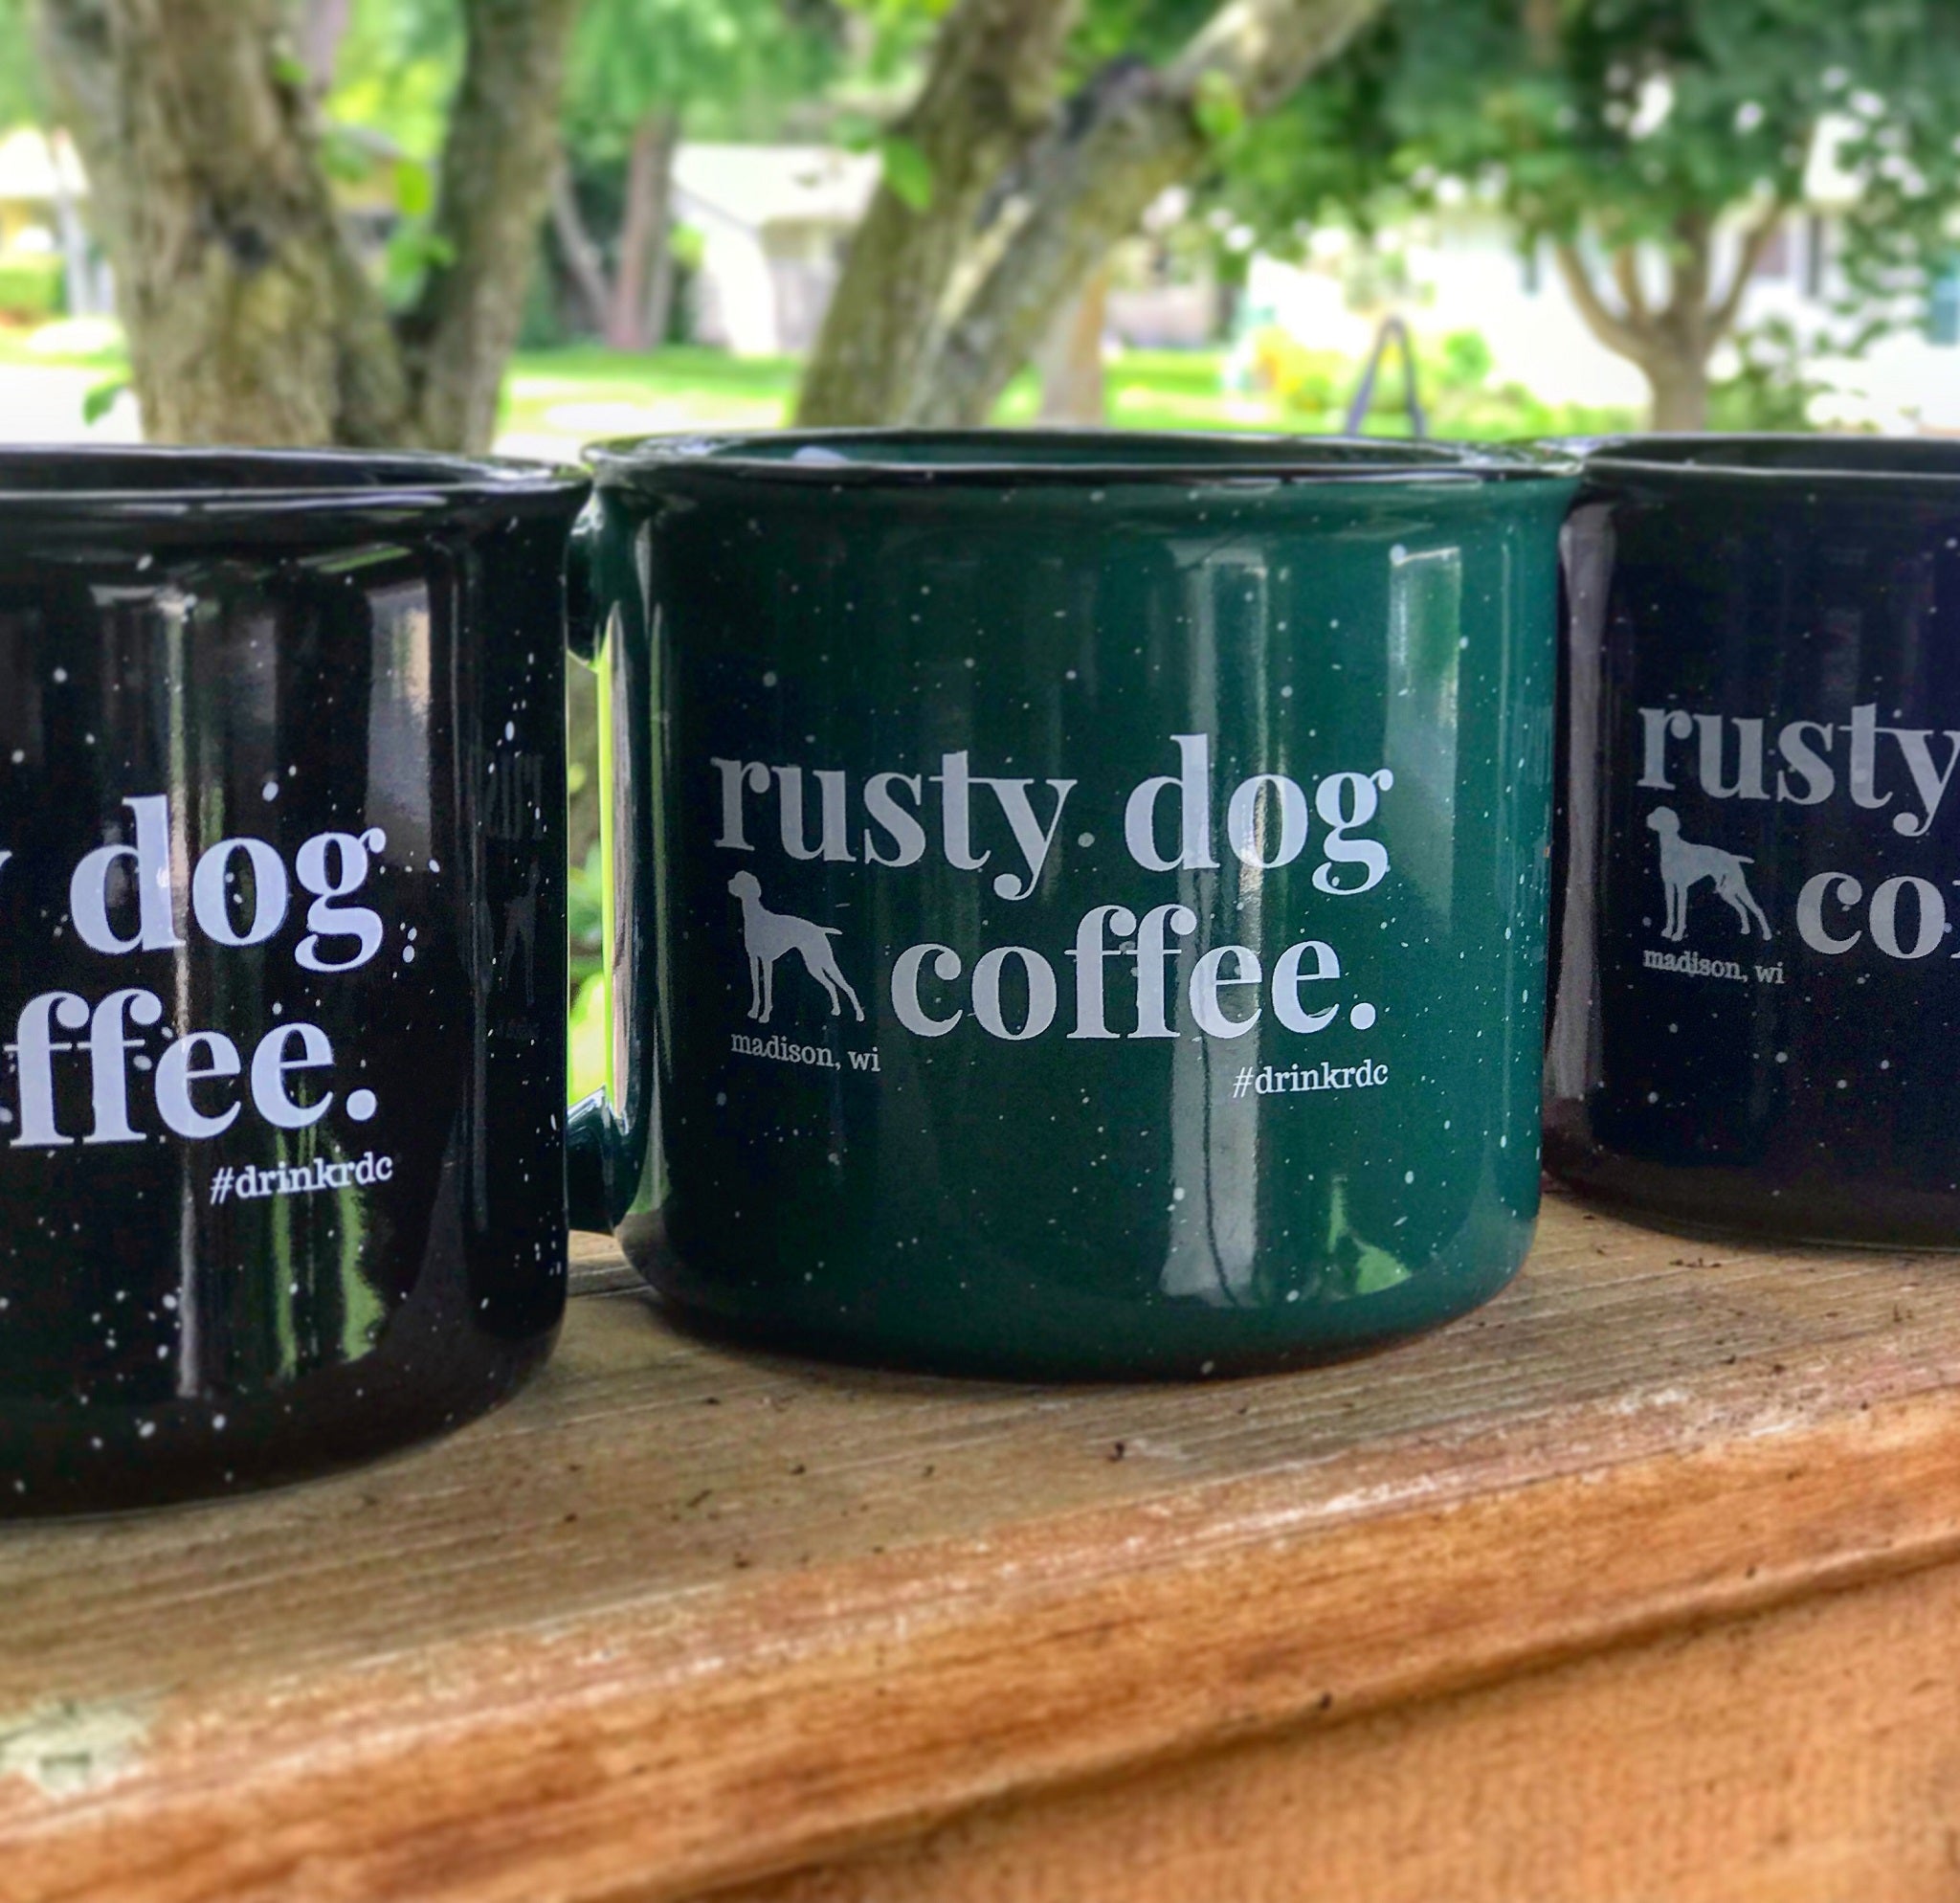 http://www.rustydogcoffee.com/cdn/shop/products/rusty-dog-coffee-madison-wi-mugs.JPG?v=1606514469